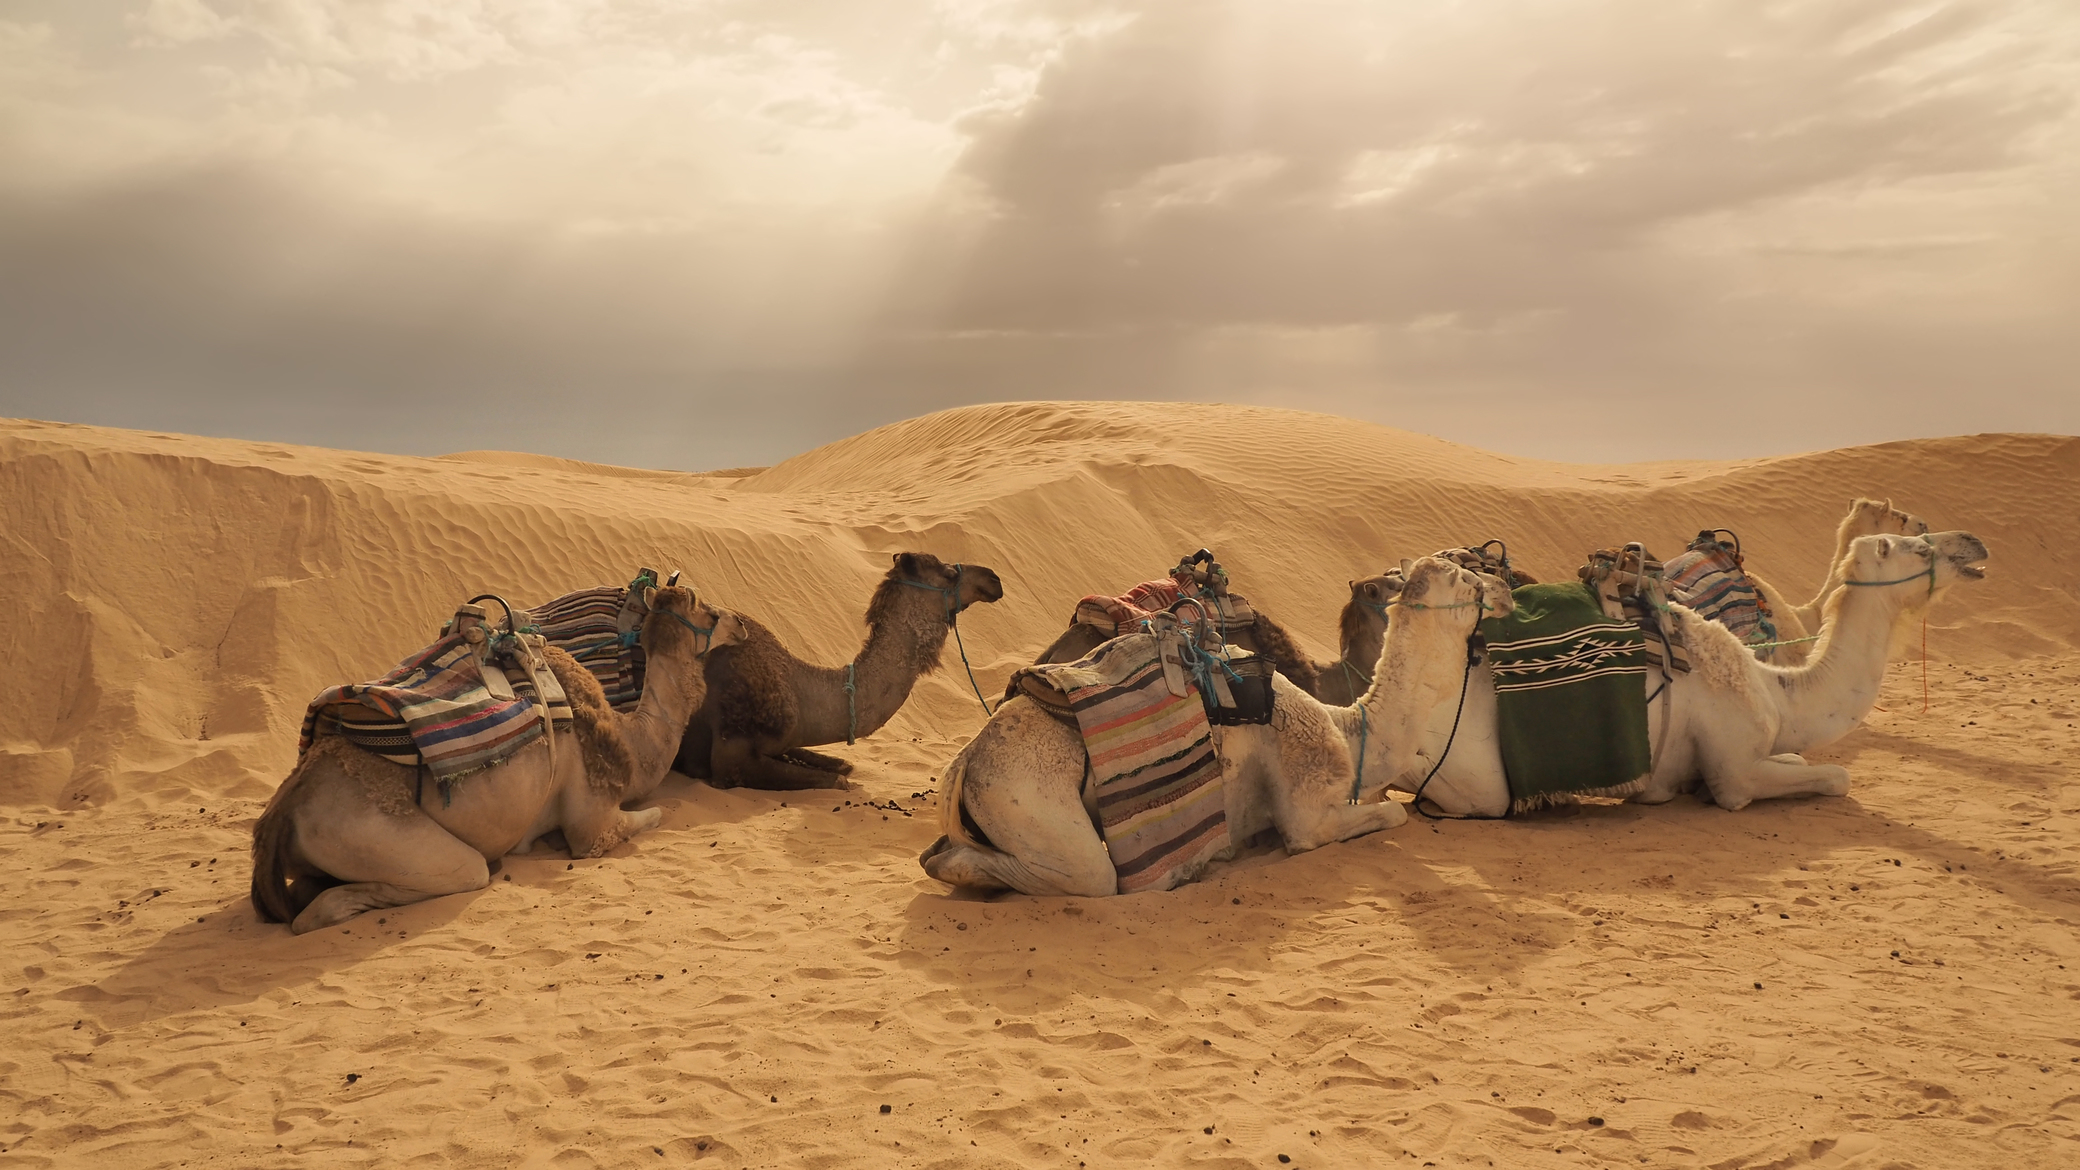 图片素材 : 阿拉伯骆驼, 乐趣, 假期, 景观, 旅游, 海滩, 车辆, 旅行 3264x2448 - syed abdullah ...